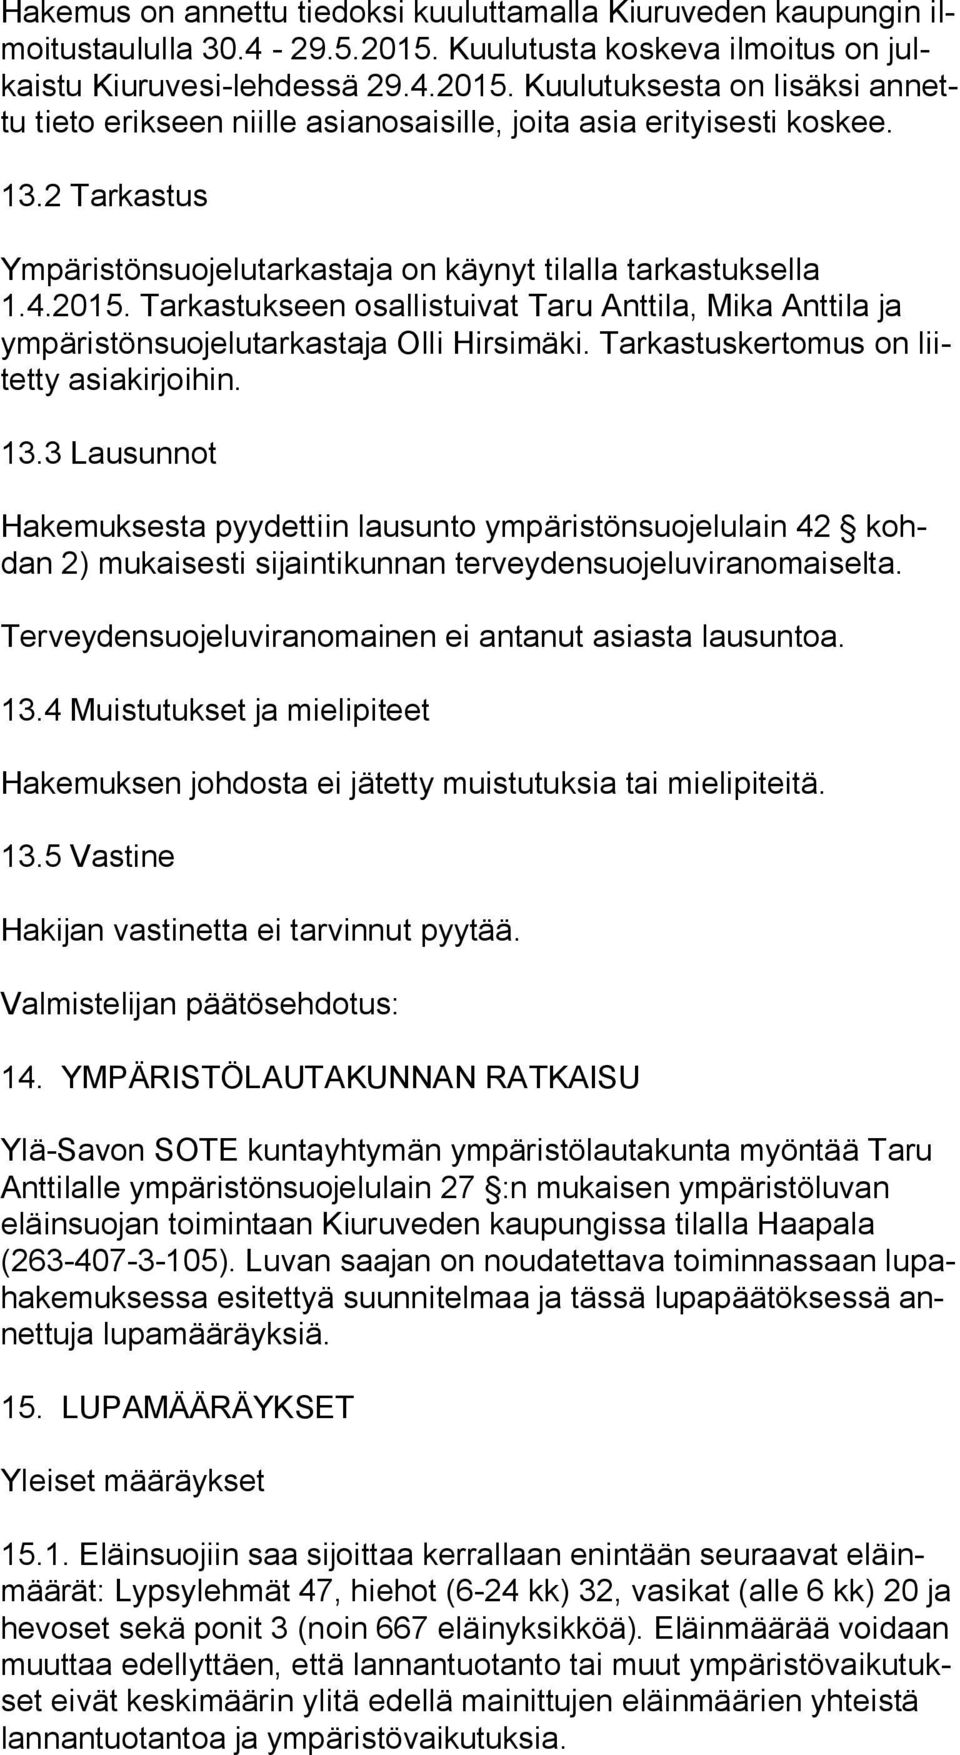 2 Tarkastus Ympäristönsuojelutarkastaja on käynyt tilalla tarkastuksella 1.4.2015. Tarkastukseen osallistuivat Taru Anttila, Mika Anttila ja ym pä ris tön suo je lu tar kas ta ja Olli Hirsimäki.